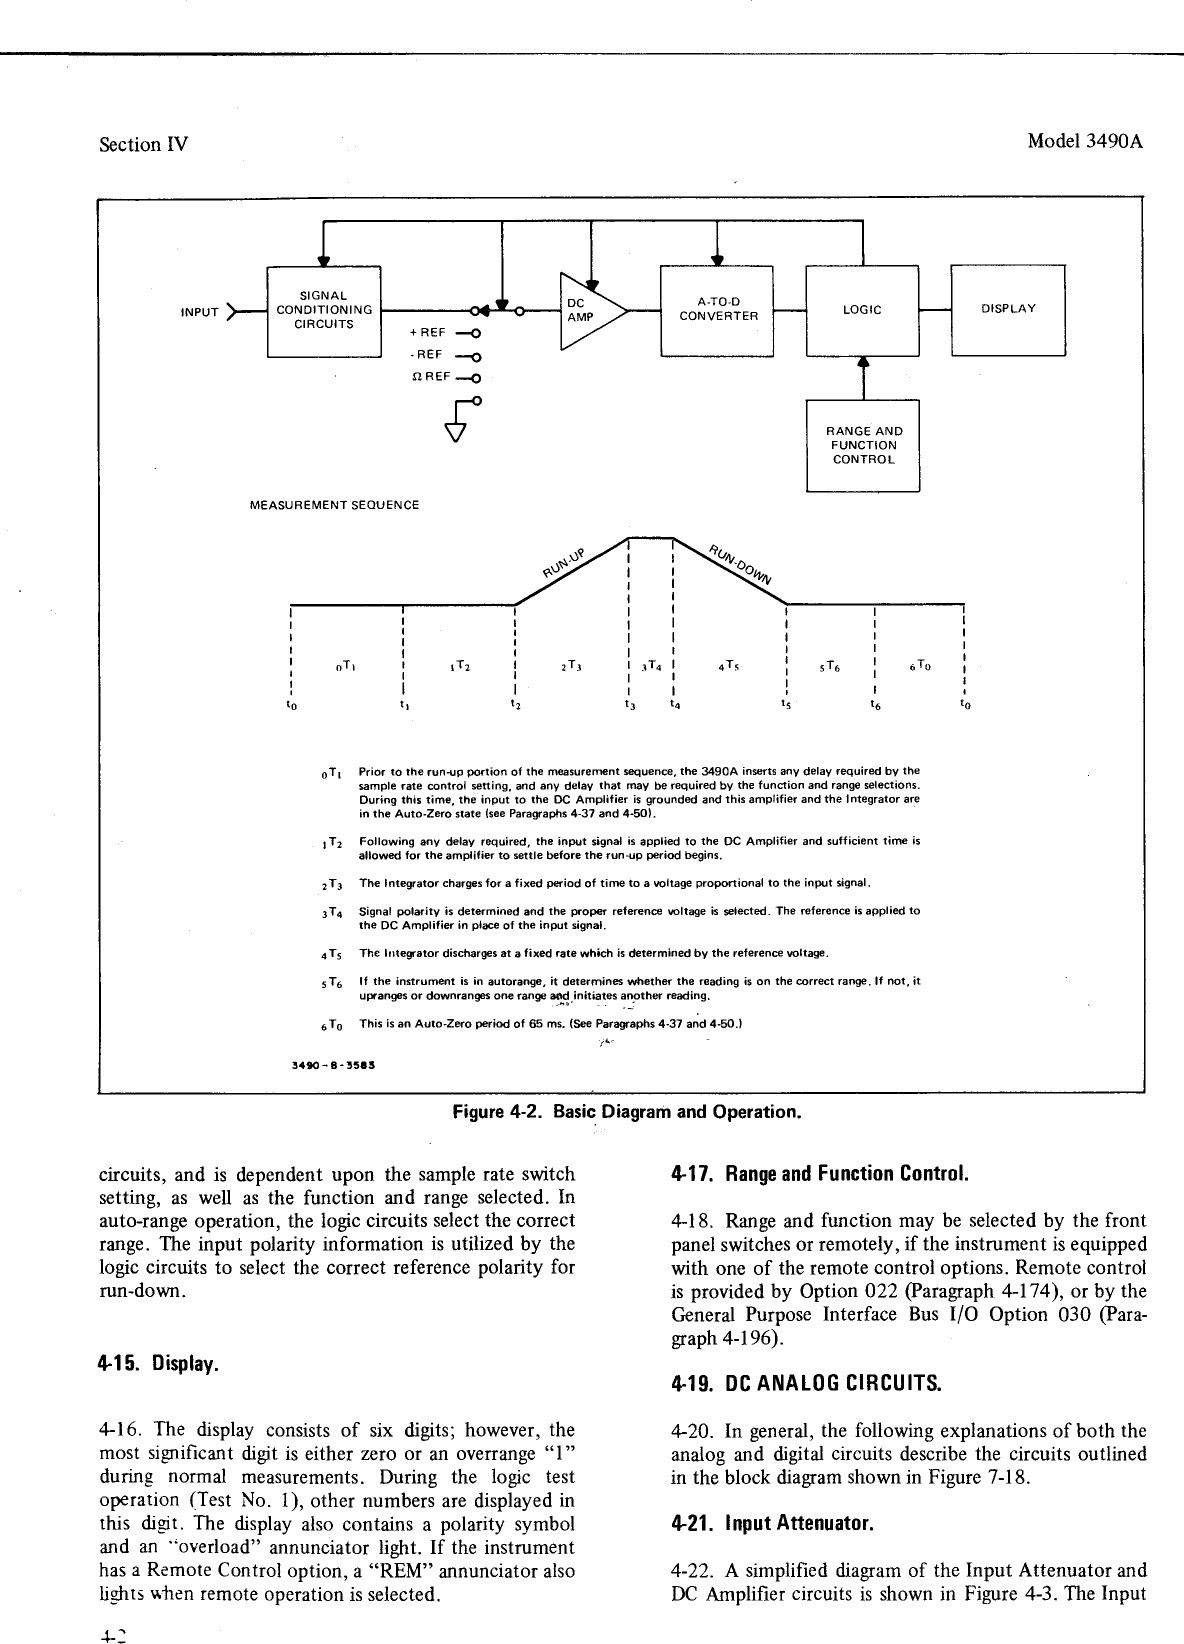 Pin Layout Tda 2040 Hp Car Stereo System 3490a Users Manual Of Pin Layout Tda 2040